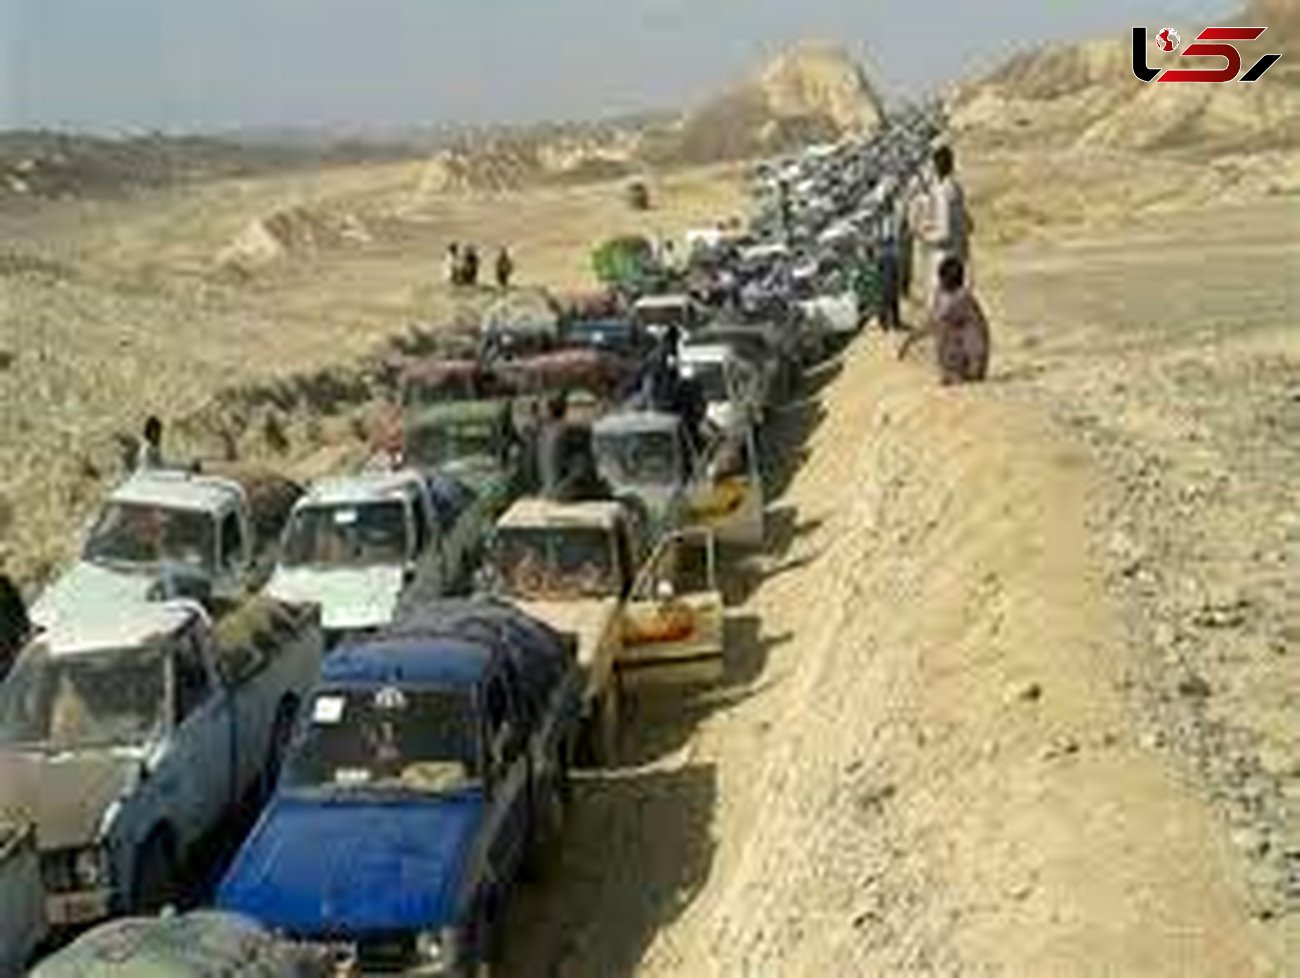 قاچاق سوخت توسط 30 هزار خودرو در سیستان و بلوچستان